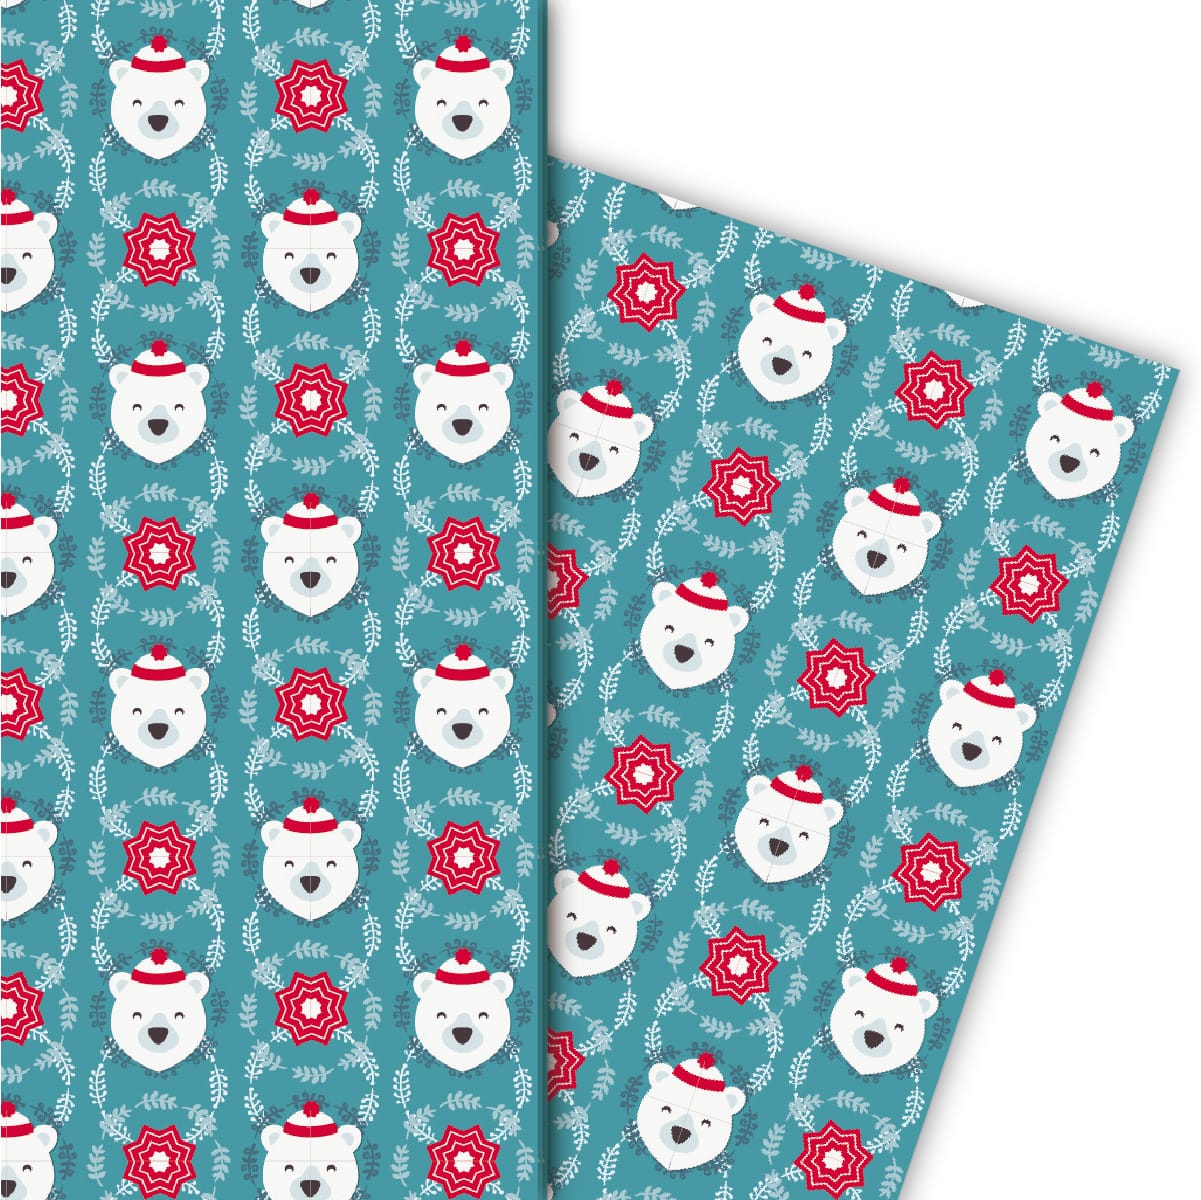 Kartenkaufrausch: Weihnachts Geschenkpapier mit Eisbär aus unserer Weihnachts Papeterie in blau